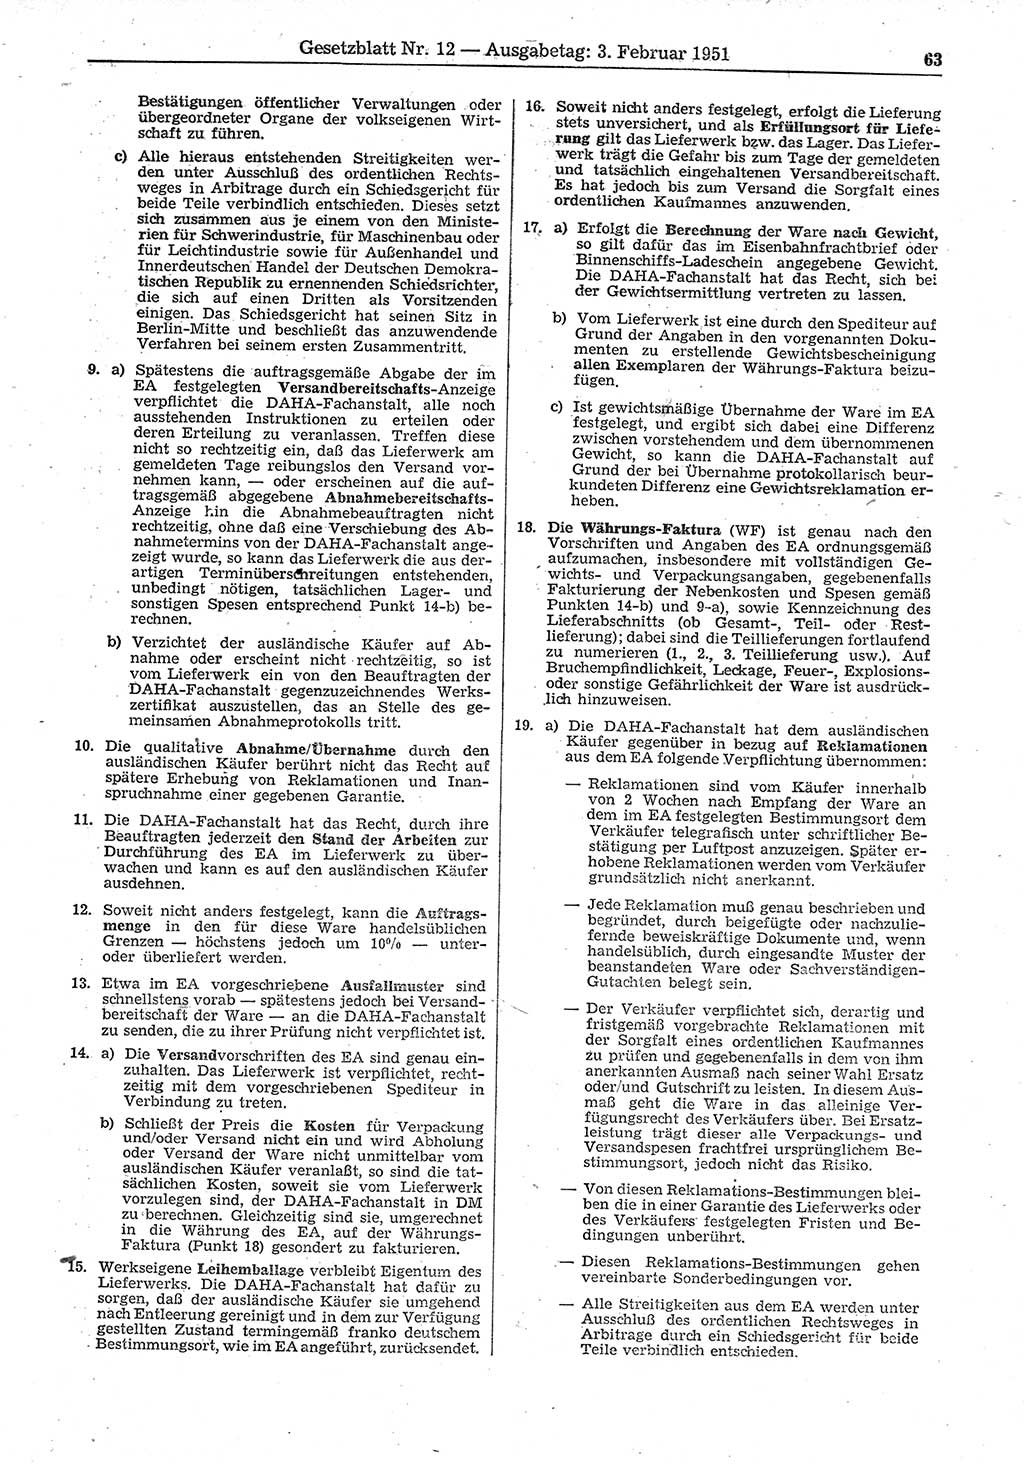 Gesetzblatt (GBl.) der Deutschen Demokratischen Republik (DDR) 1951, Seite 63 (GBl. DDR 1951, S. 63)